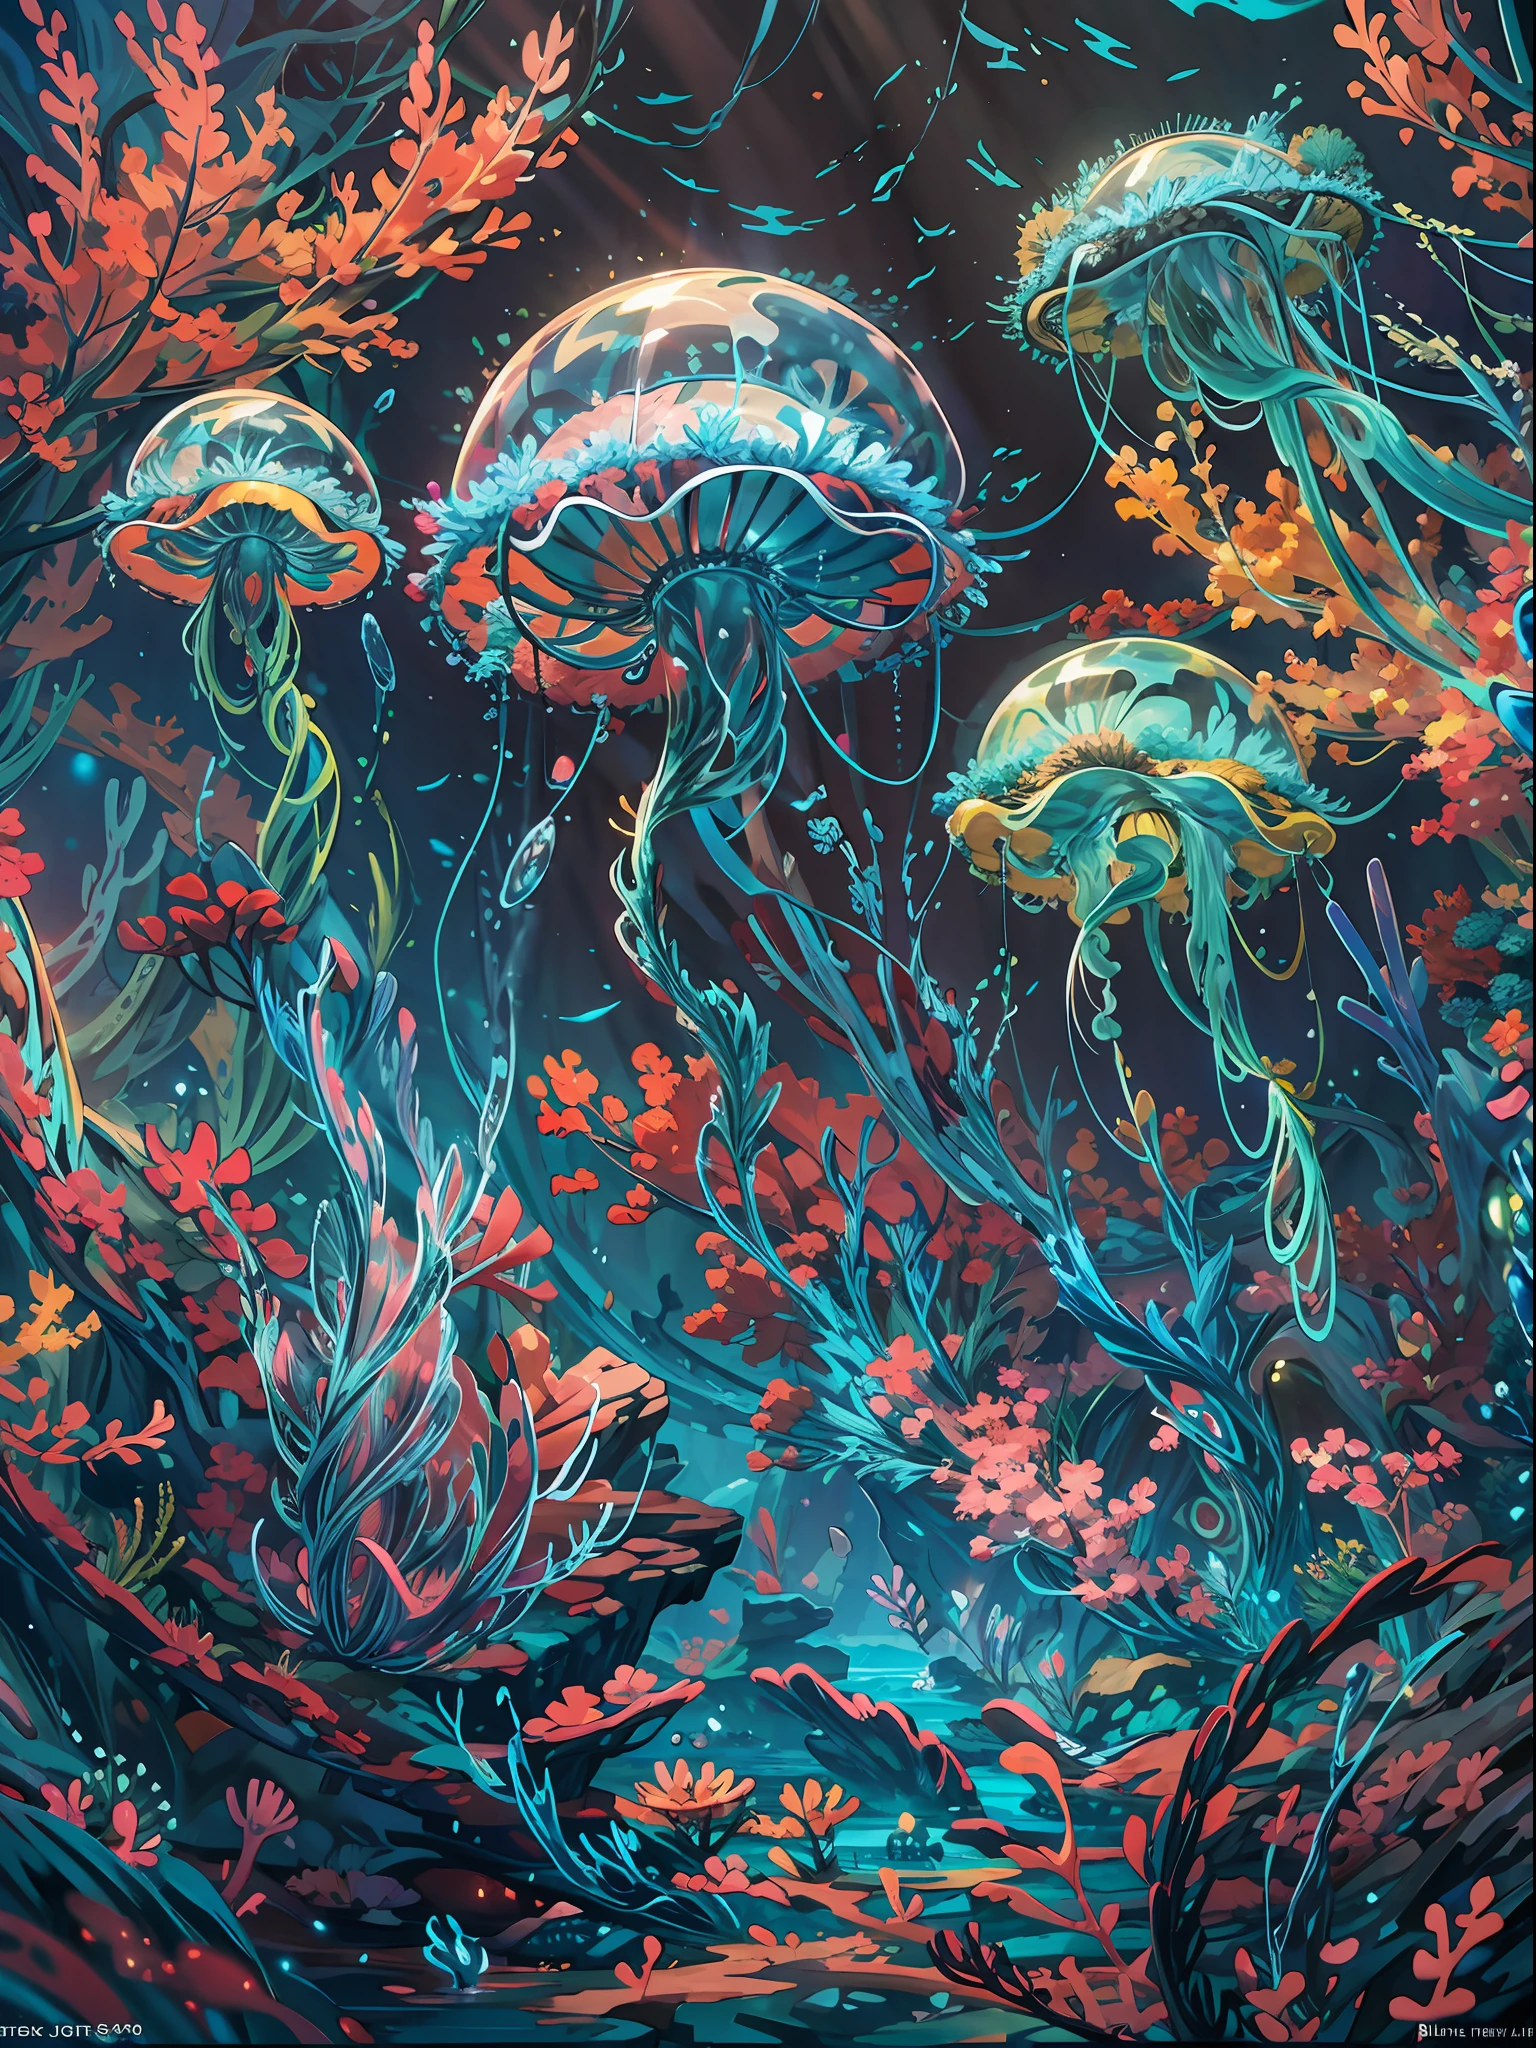 深海背景, 海底場景, 水下燈,海螫,, 顏色ful small fishes, 顏色ful coral reef, 幻想 sea, 動態角度, 休息,詳細的,實際的,4k 高度詳細的數位藝術,辛烷渲染, 生物發光, 休息 8K resolution concept art, 現實主義,由Mappa工作室設計,傑作,最好的品質,官方藝術,插圖,清晰的線條,(涼爽的_顏色),完美的構圖,荒謬的, 幻想,專注的,三分法